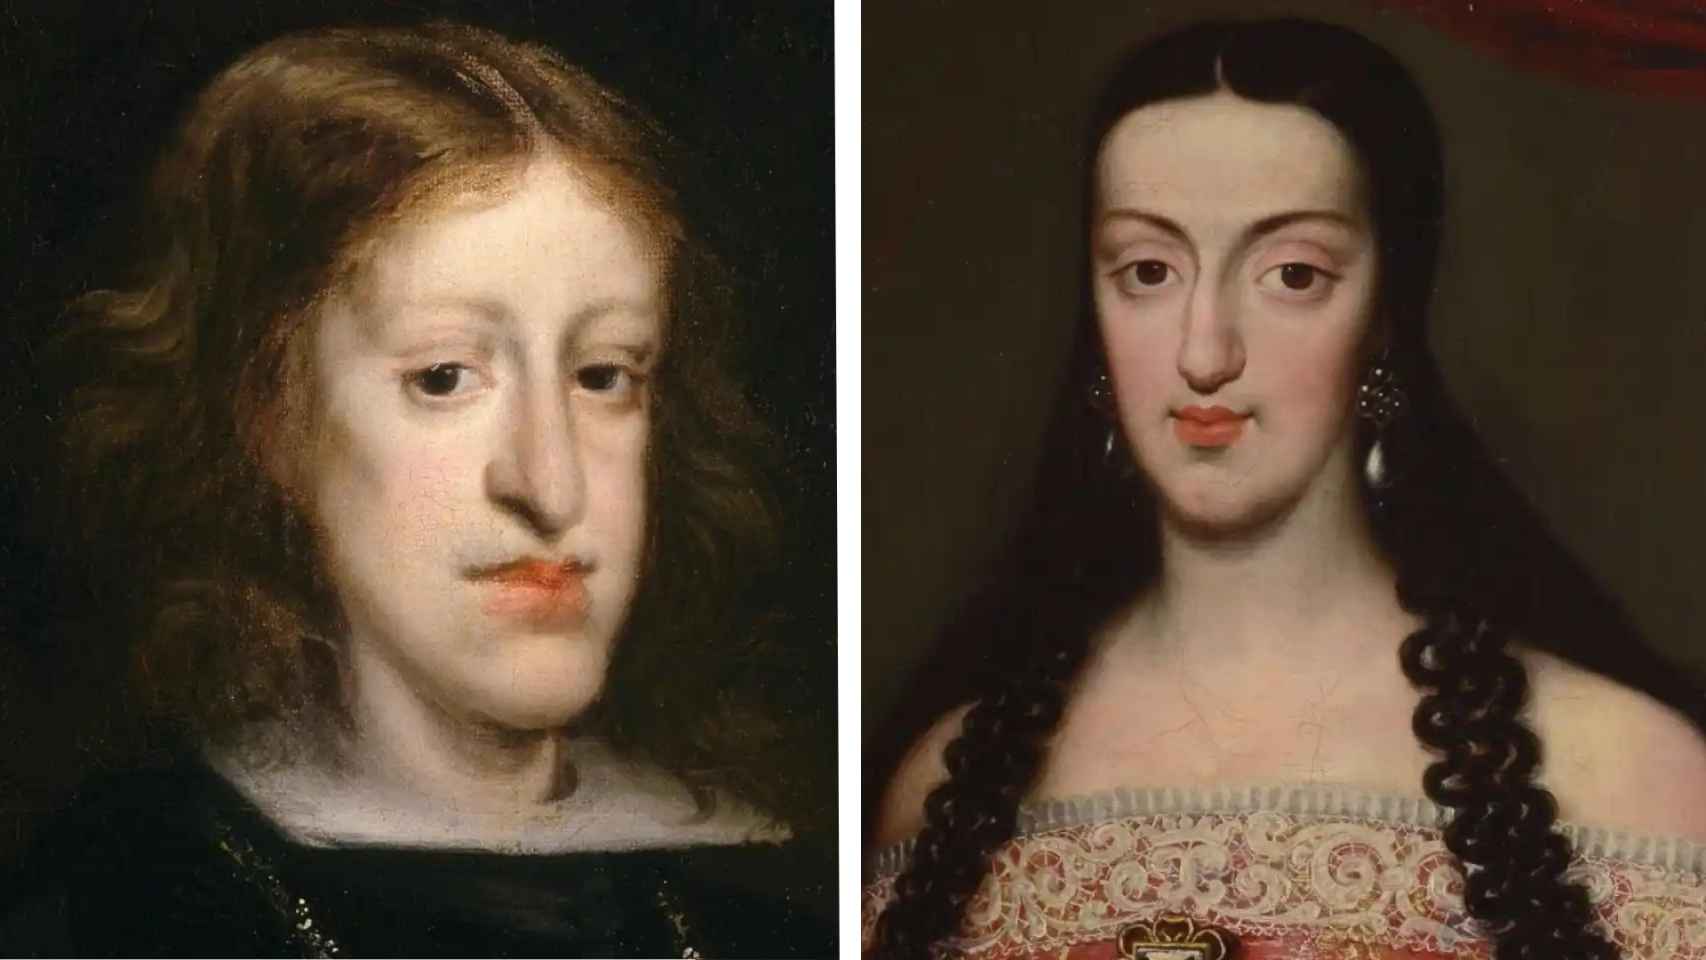 La agraciada pareja real: Carlos II y María Luisa de Orleans.